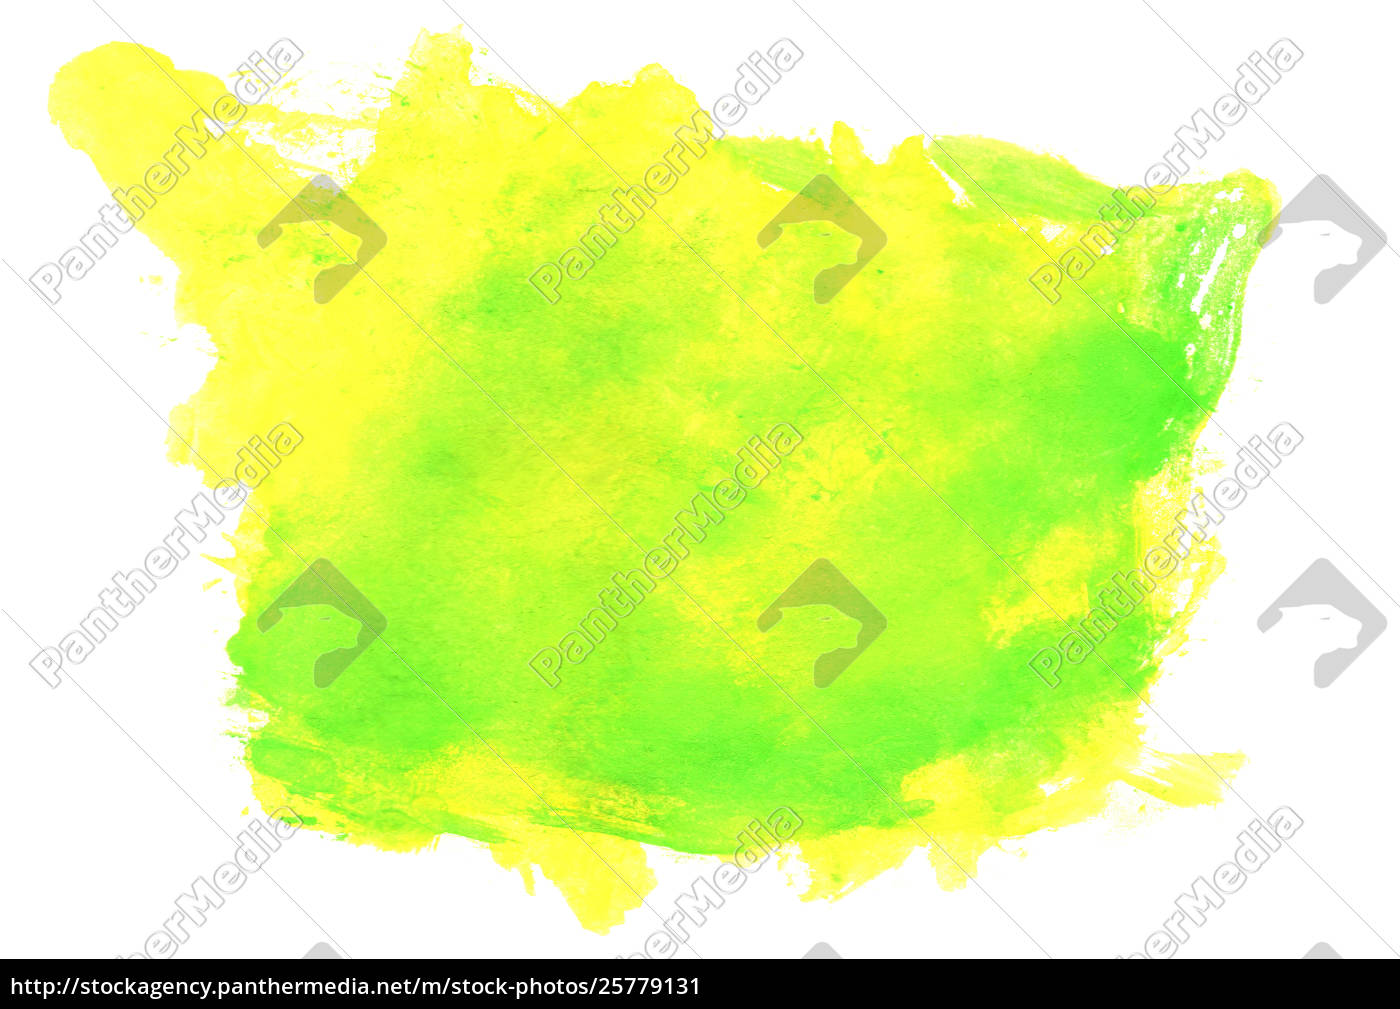 gelbgrün aquarell hintergrund - Lizenzfreies Bild - #25779131 ...